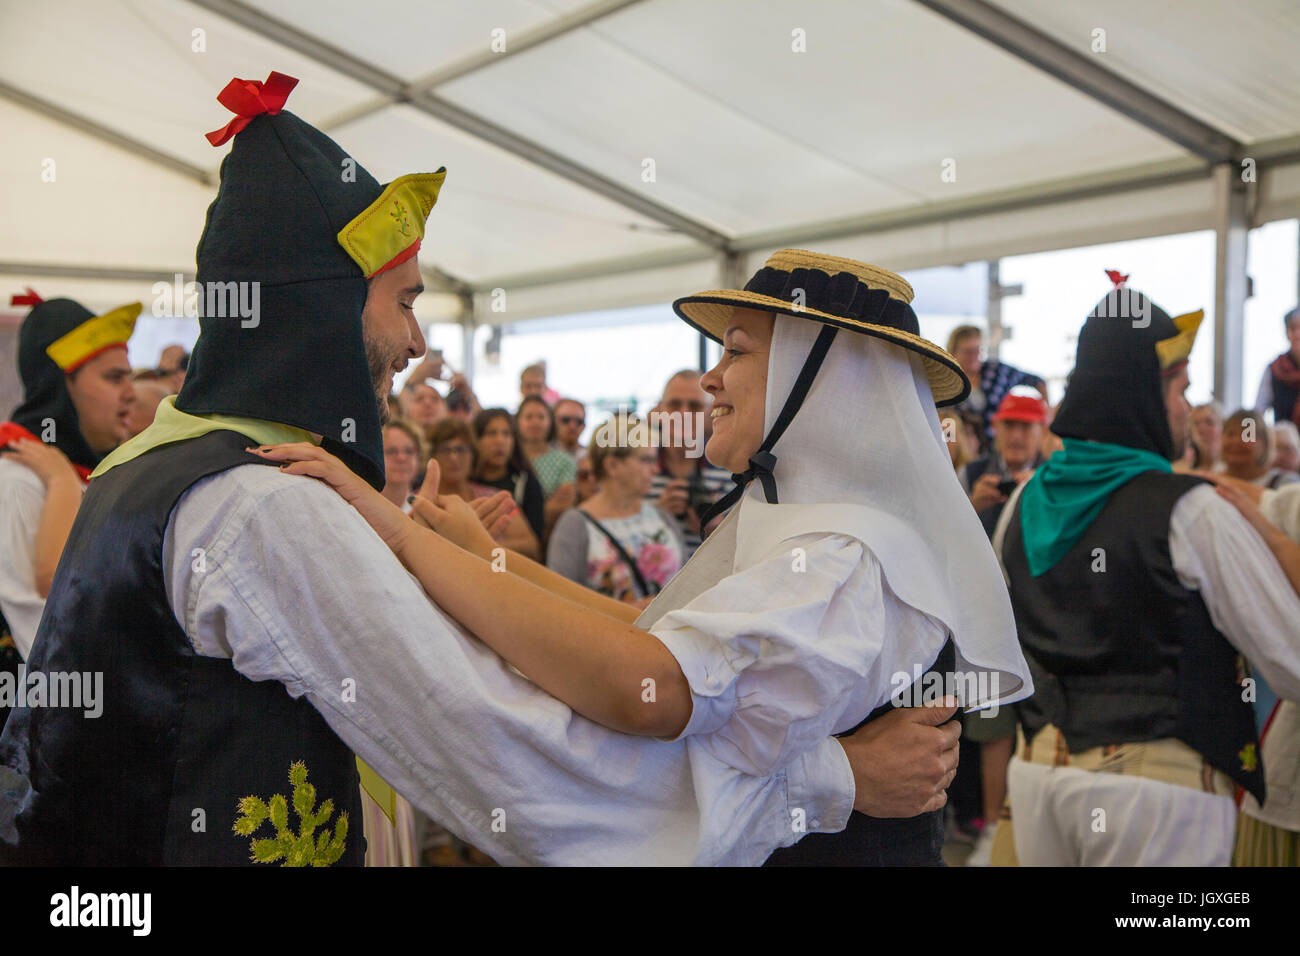 Tanzvorfuehrung, kanarische maenner und Frauen in traditioneller kleidung auf dem woechentlichen sonntagsmarkt in Teguise, Lanzarote, kanarische insel Foto Stock